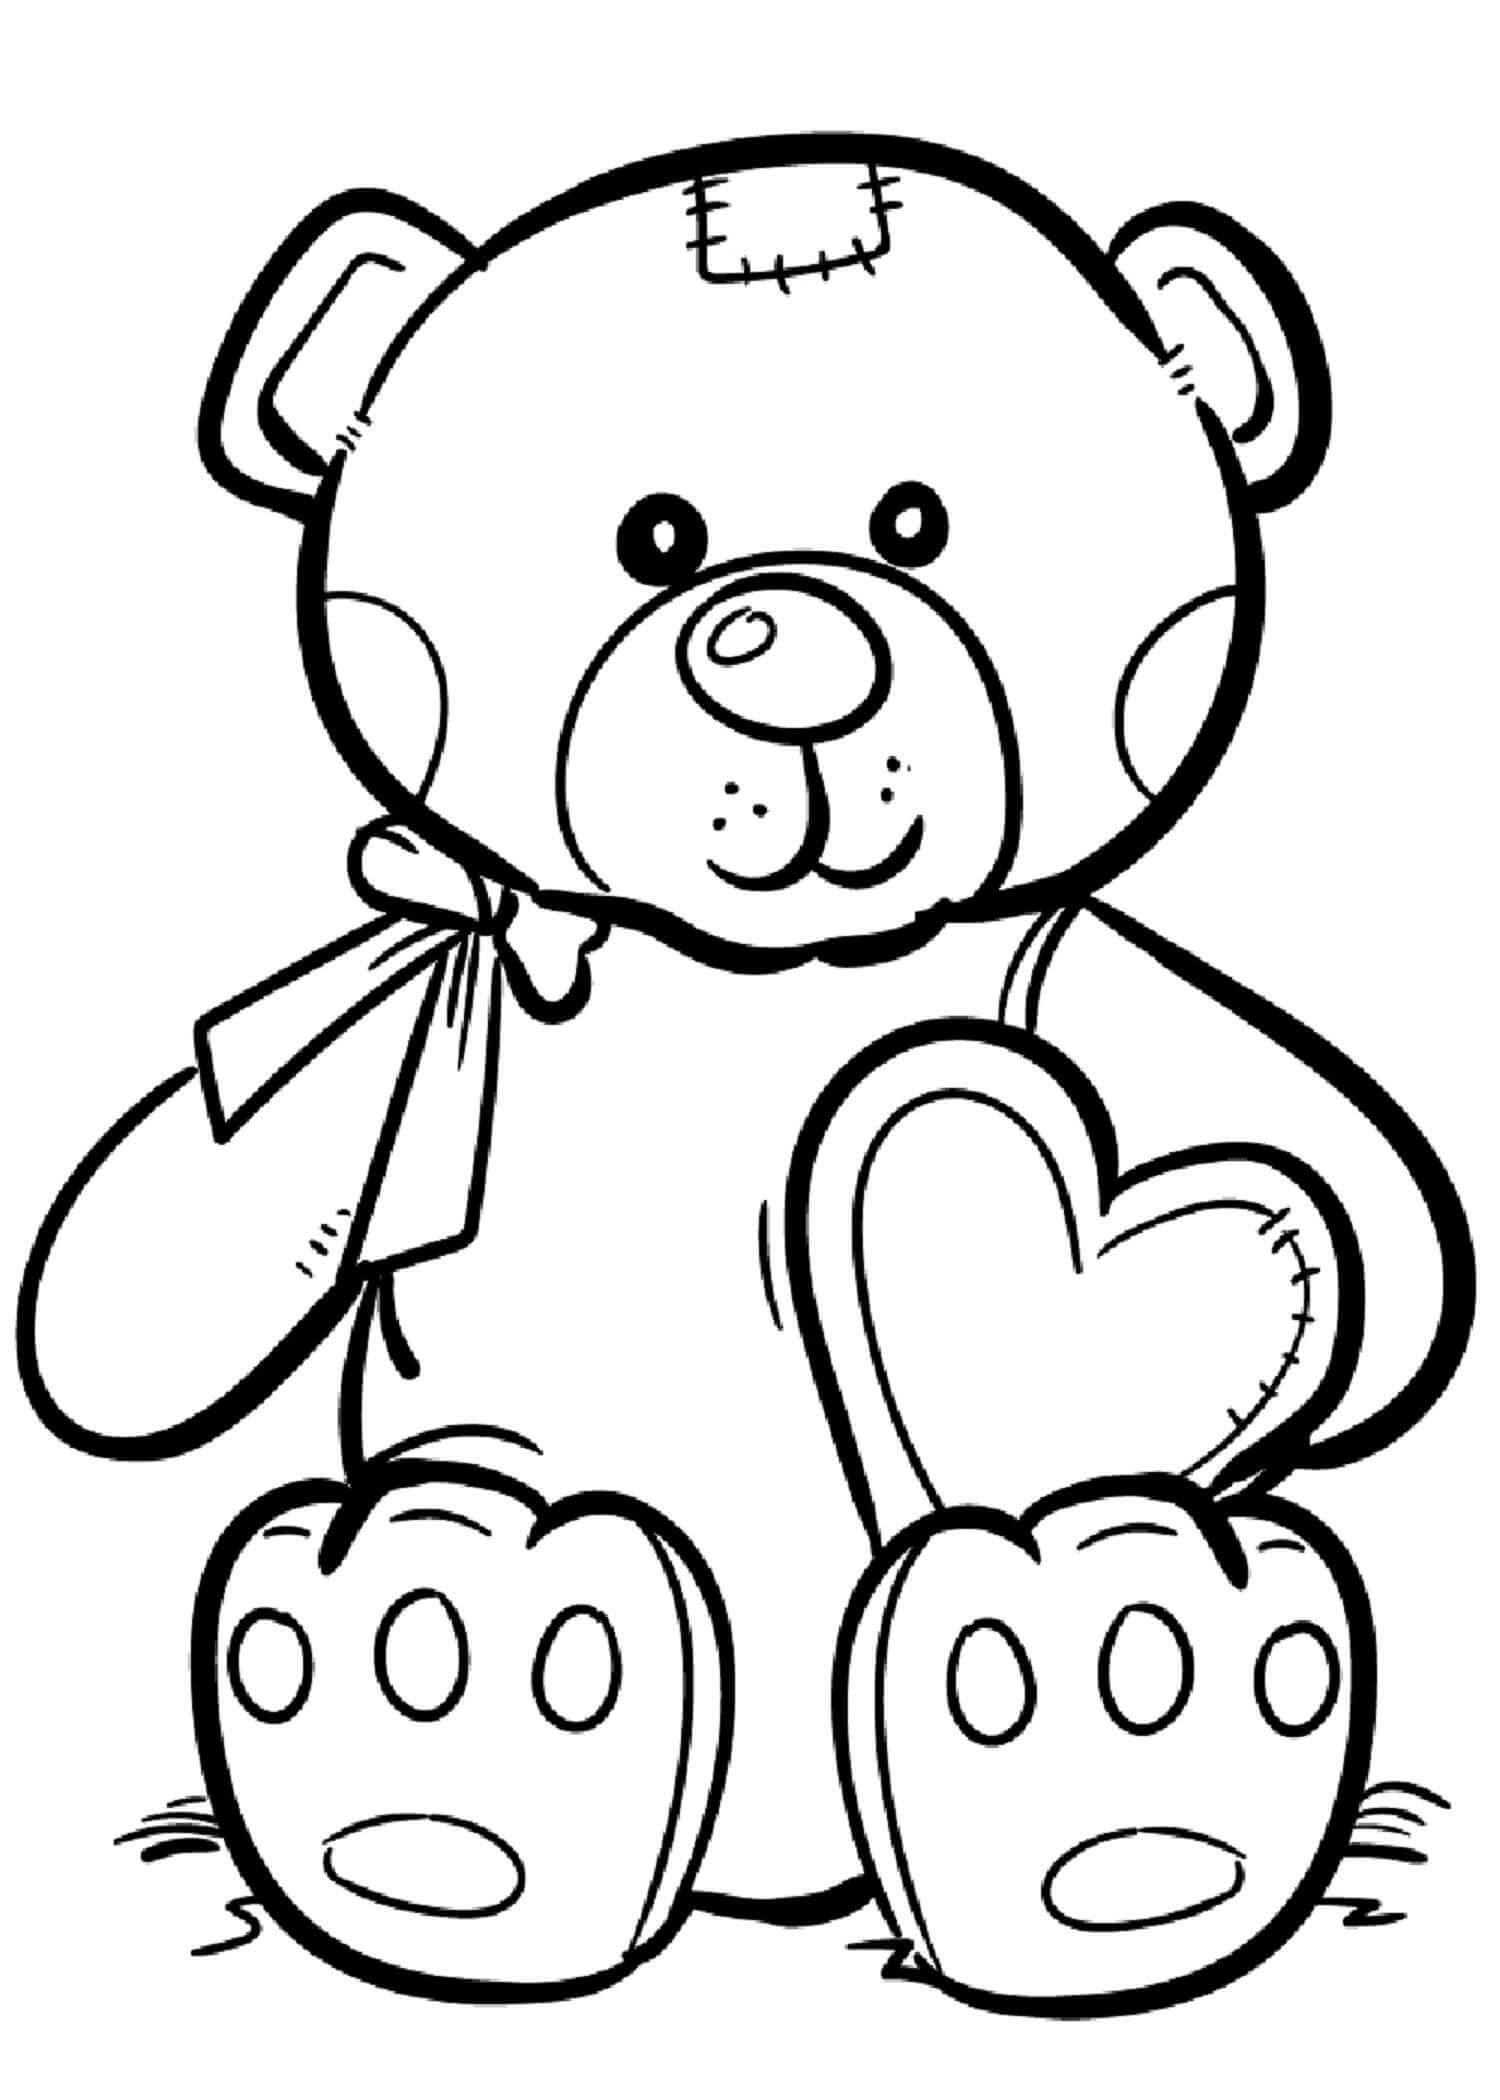 Desenho De Ursinho De Pelúcia Com Coração para colorir